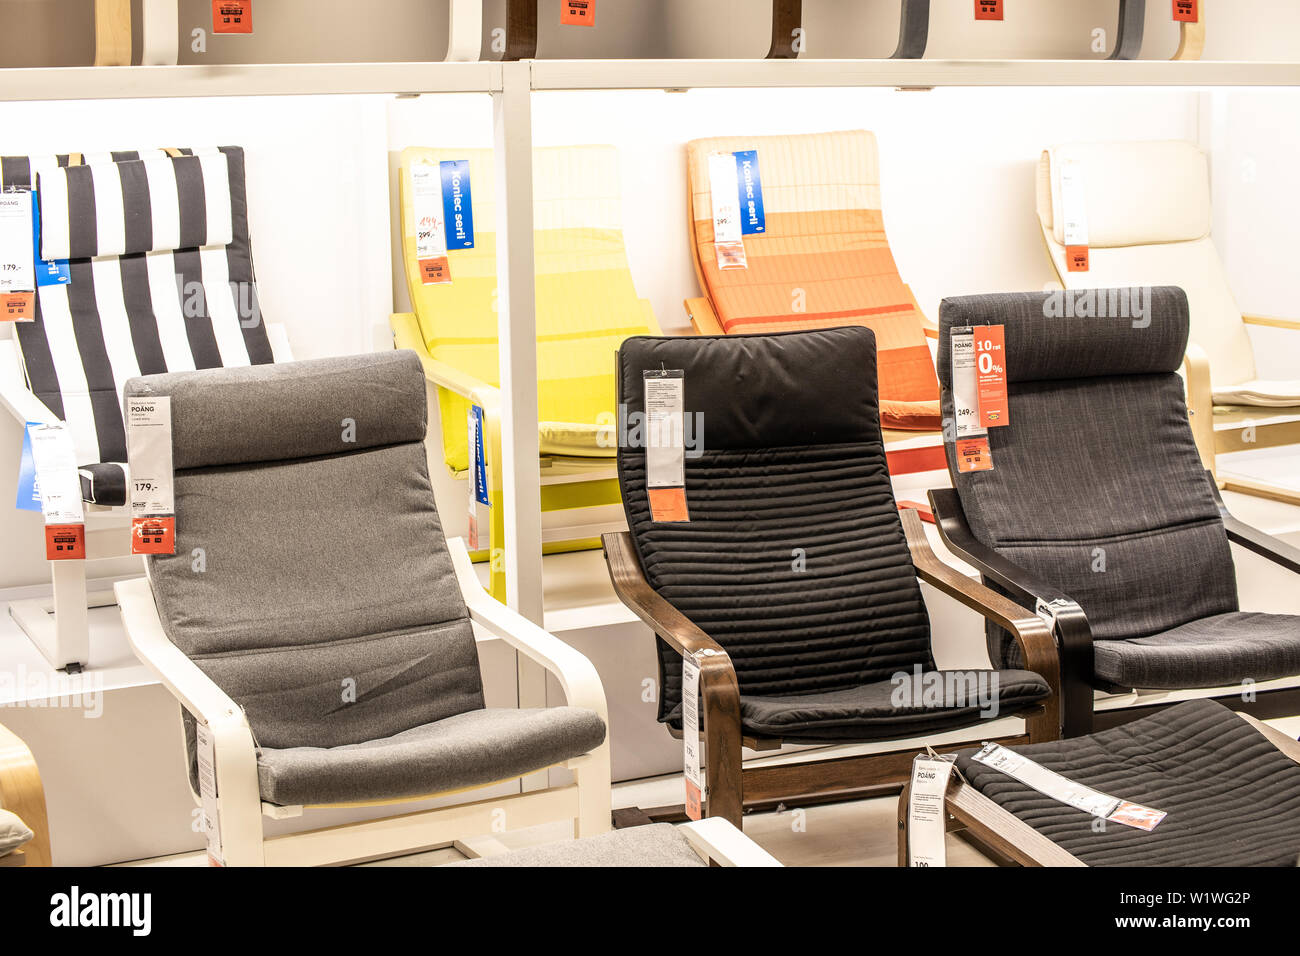 Ikea chairs immagini e fotografie stock ad alta risoluzione - Alamy